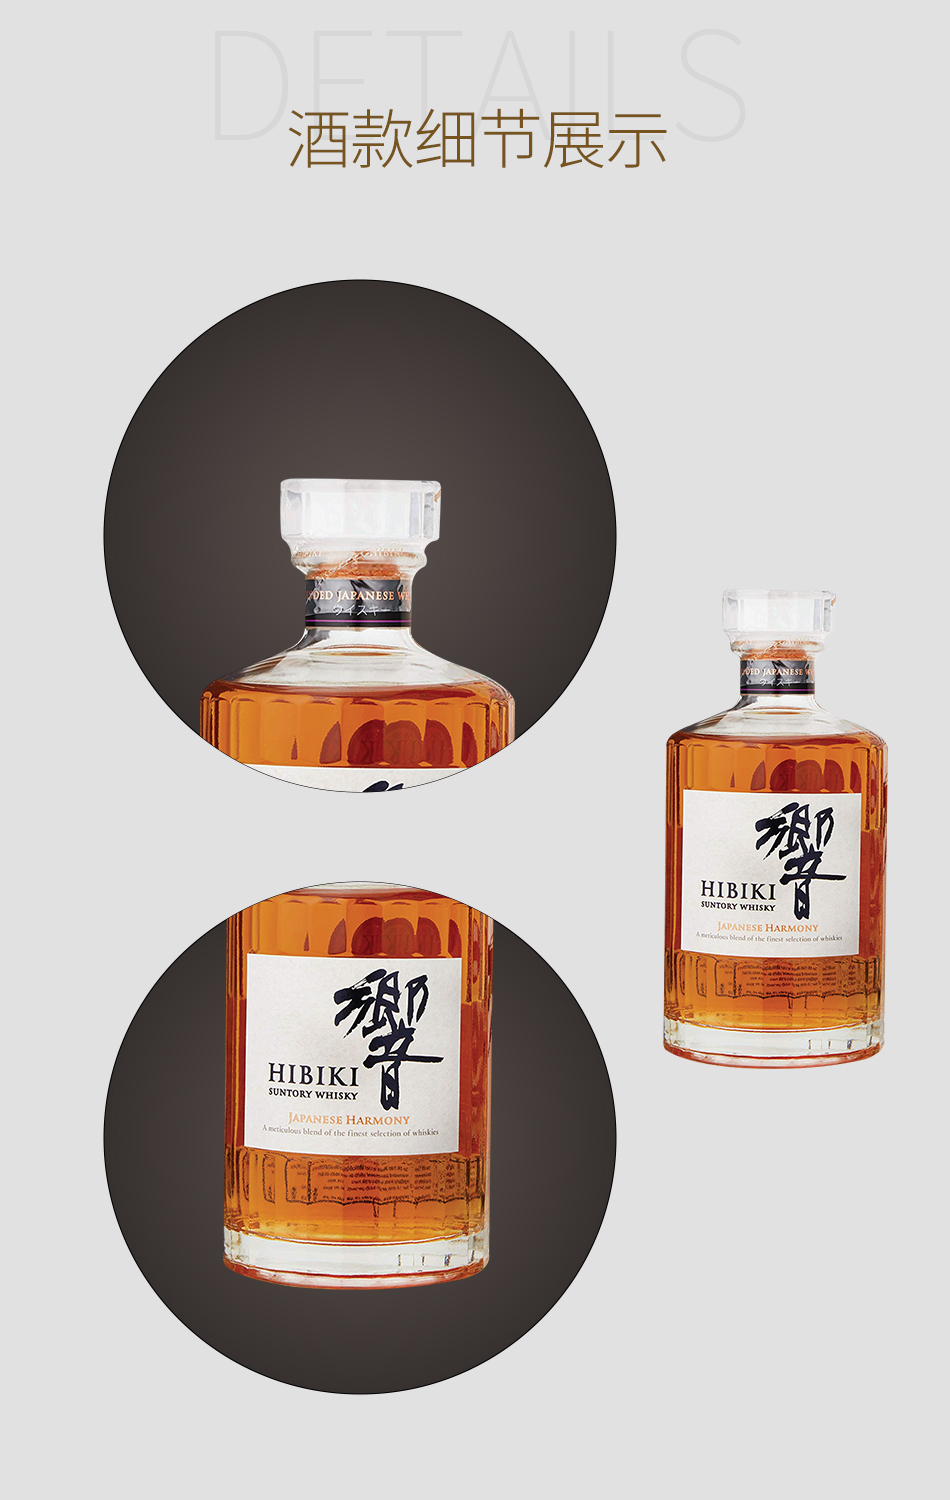 响和风醇韵调配型日本威士忌